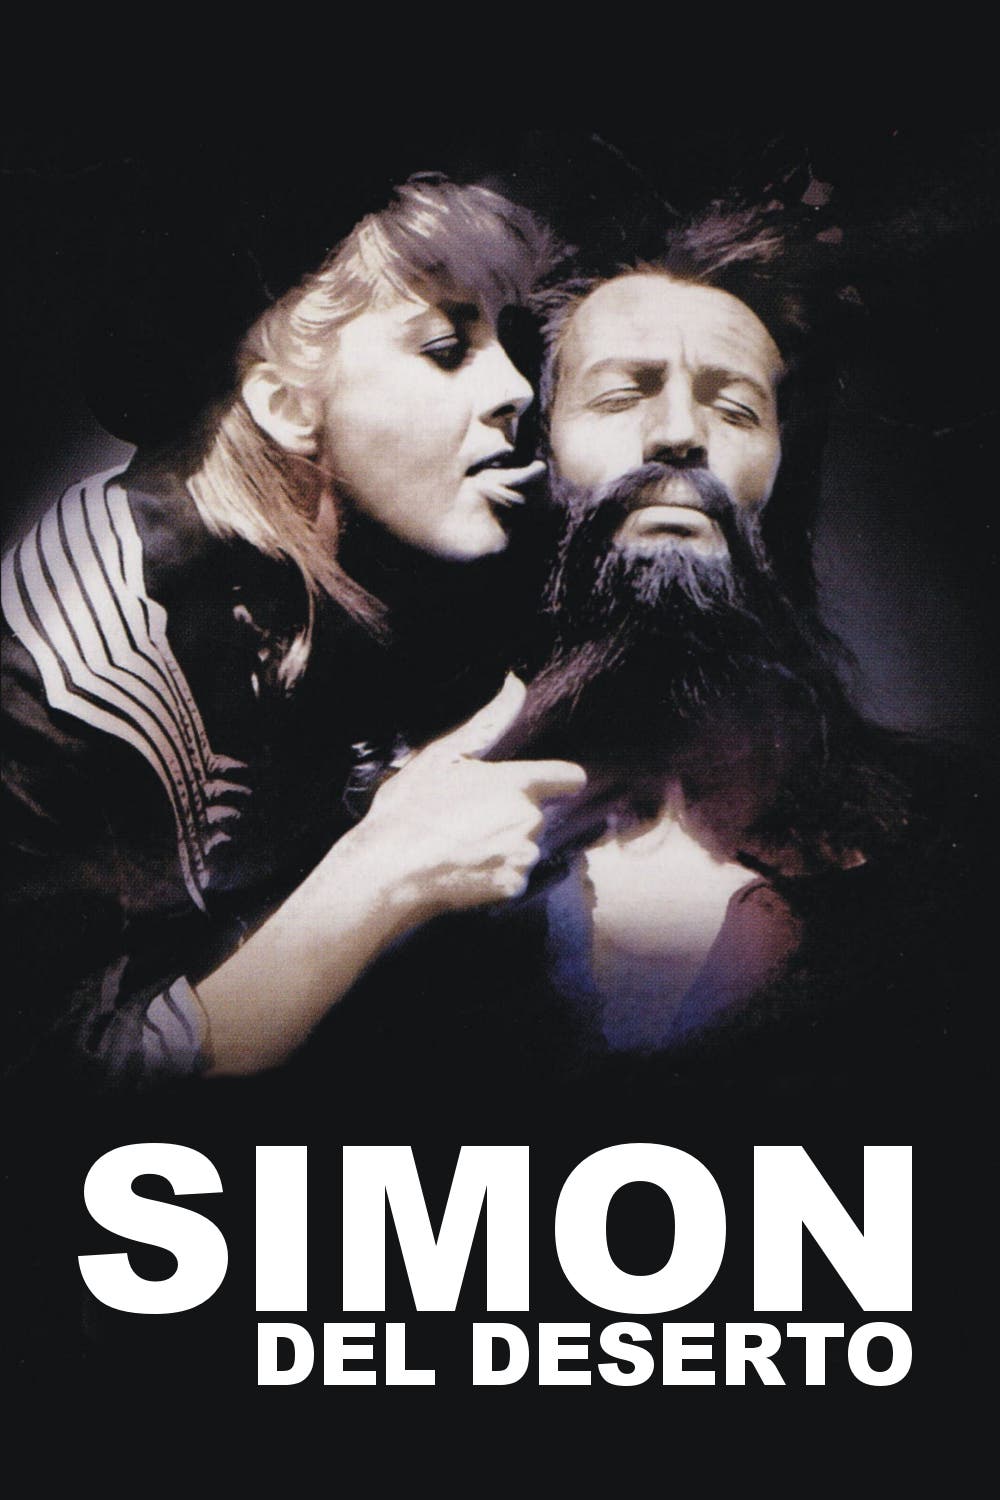 Simon del deserto [B/N] (1965)